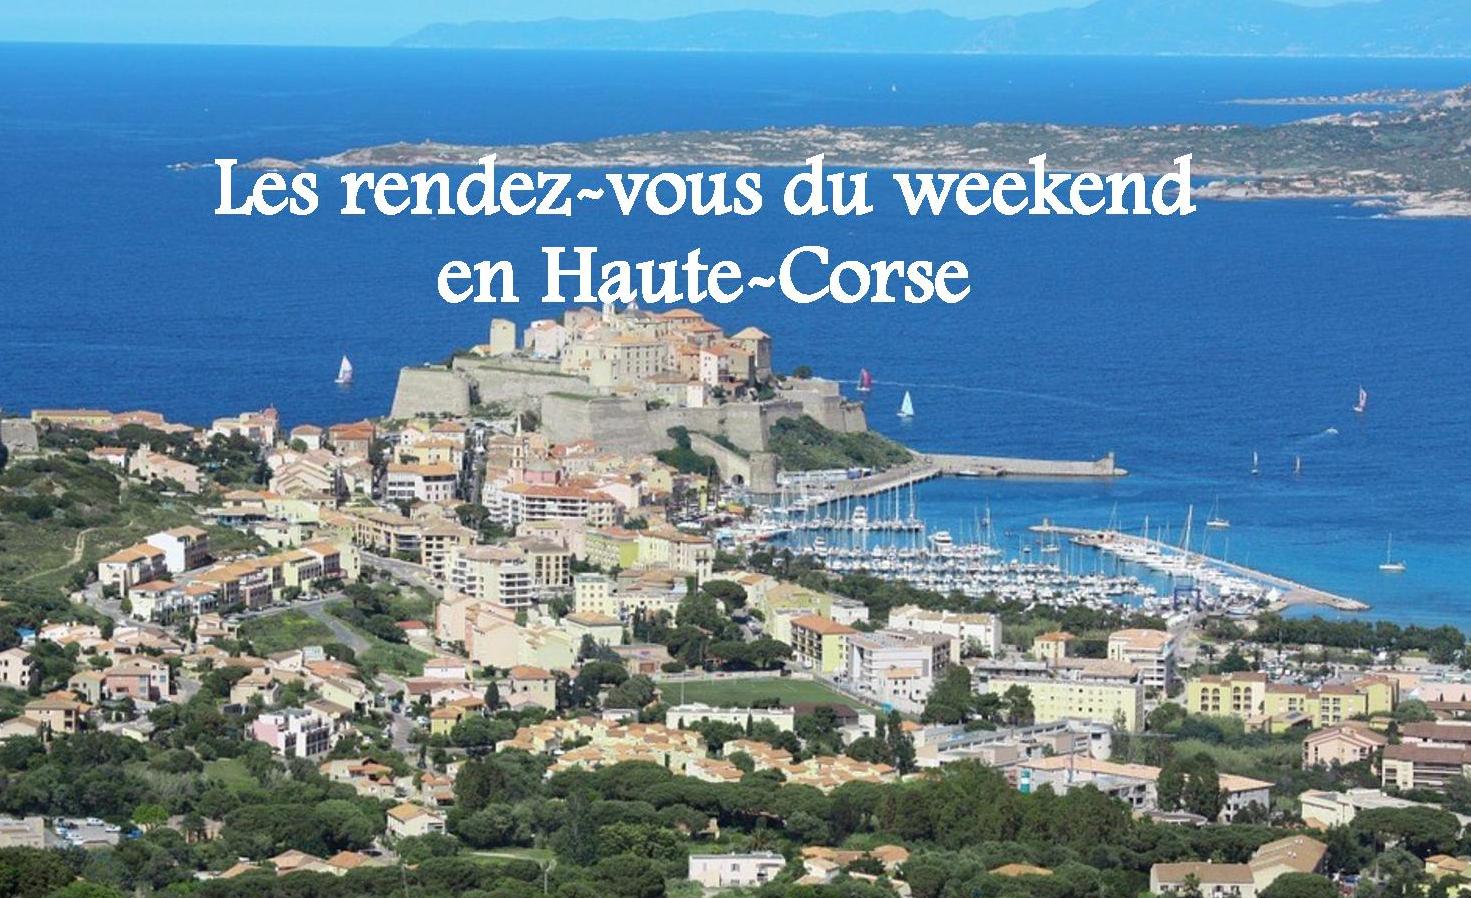 Les rendez-vous du week-end en Haute - Corse : Nos idées de sorties du 20 au 22 avril 2018